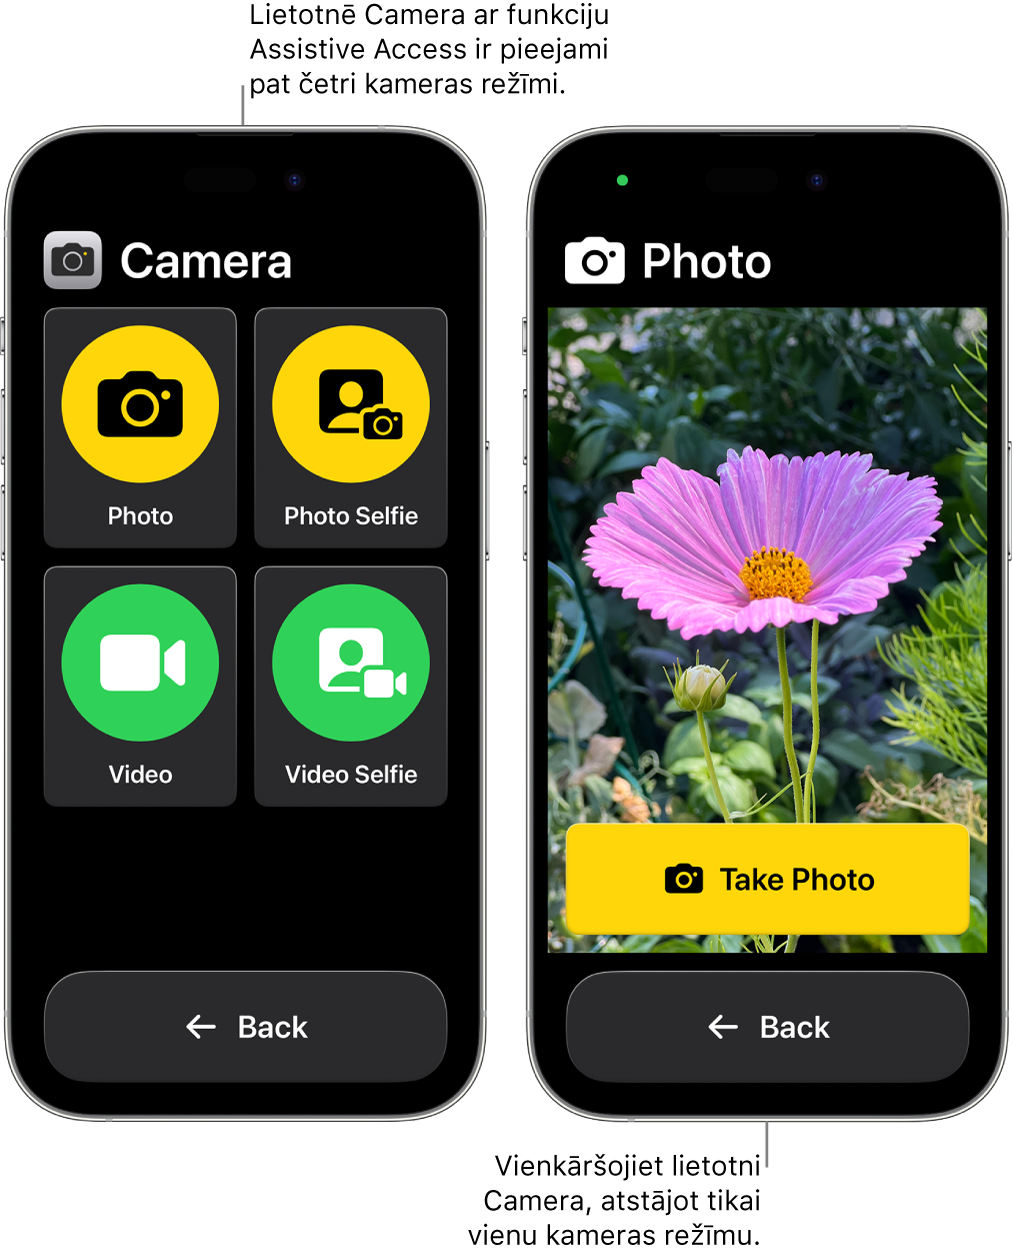 Divi iPhone tālruņi ar aktivizētu funkciju Assistive Access. Viens iPhone tālrunis, kurā redzama lietotne Camera ar kameras režīmiem, ko lietotājs var izvēlēties, piemēram, Video vai Photo Selfie. Otrajā iPhone tālrunī redzama lietotne Camera ar vienu režīmu fotoattēlu uzņemšanai.